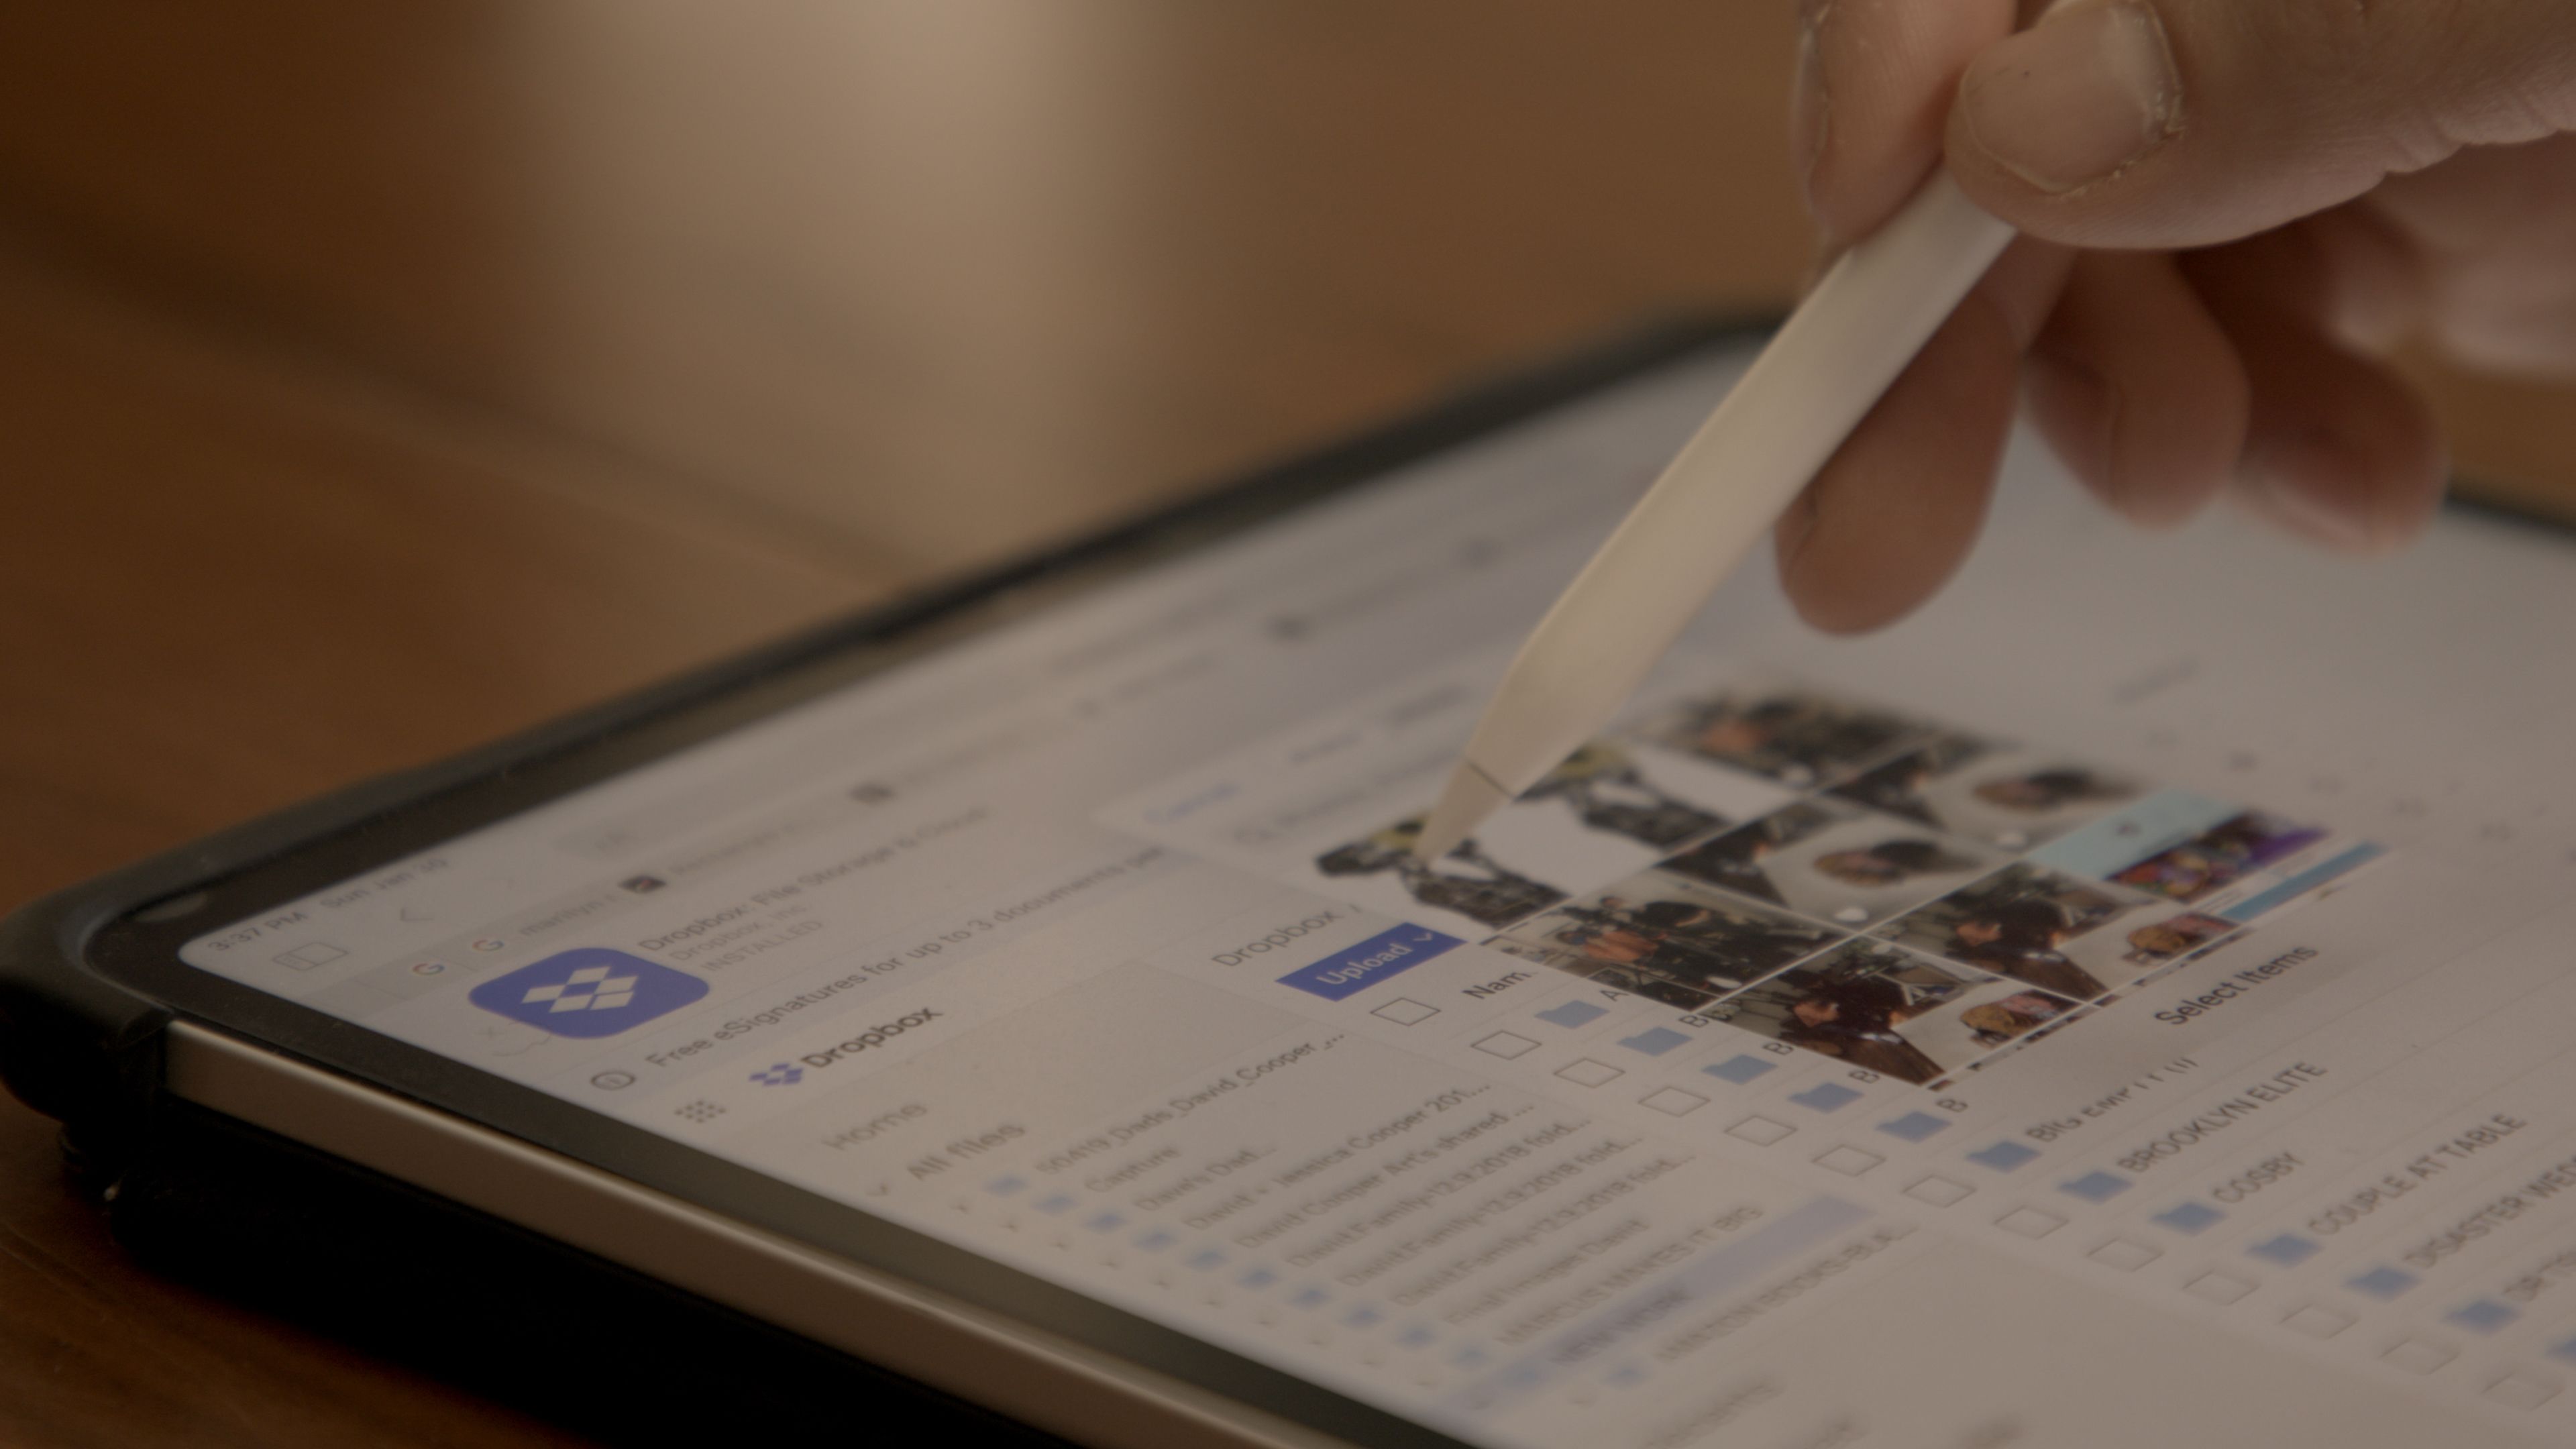 Penandaan pen digital pada tablet dalam pelantar Dropbox